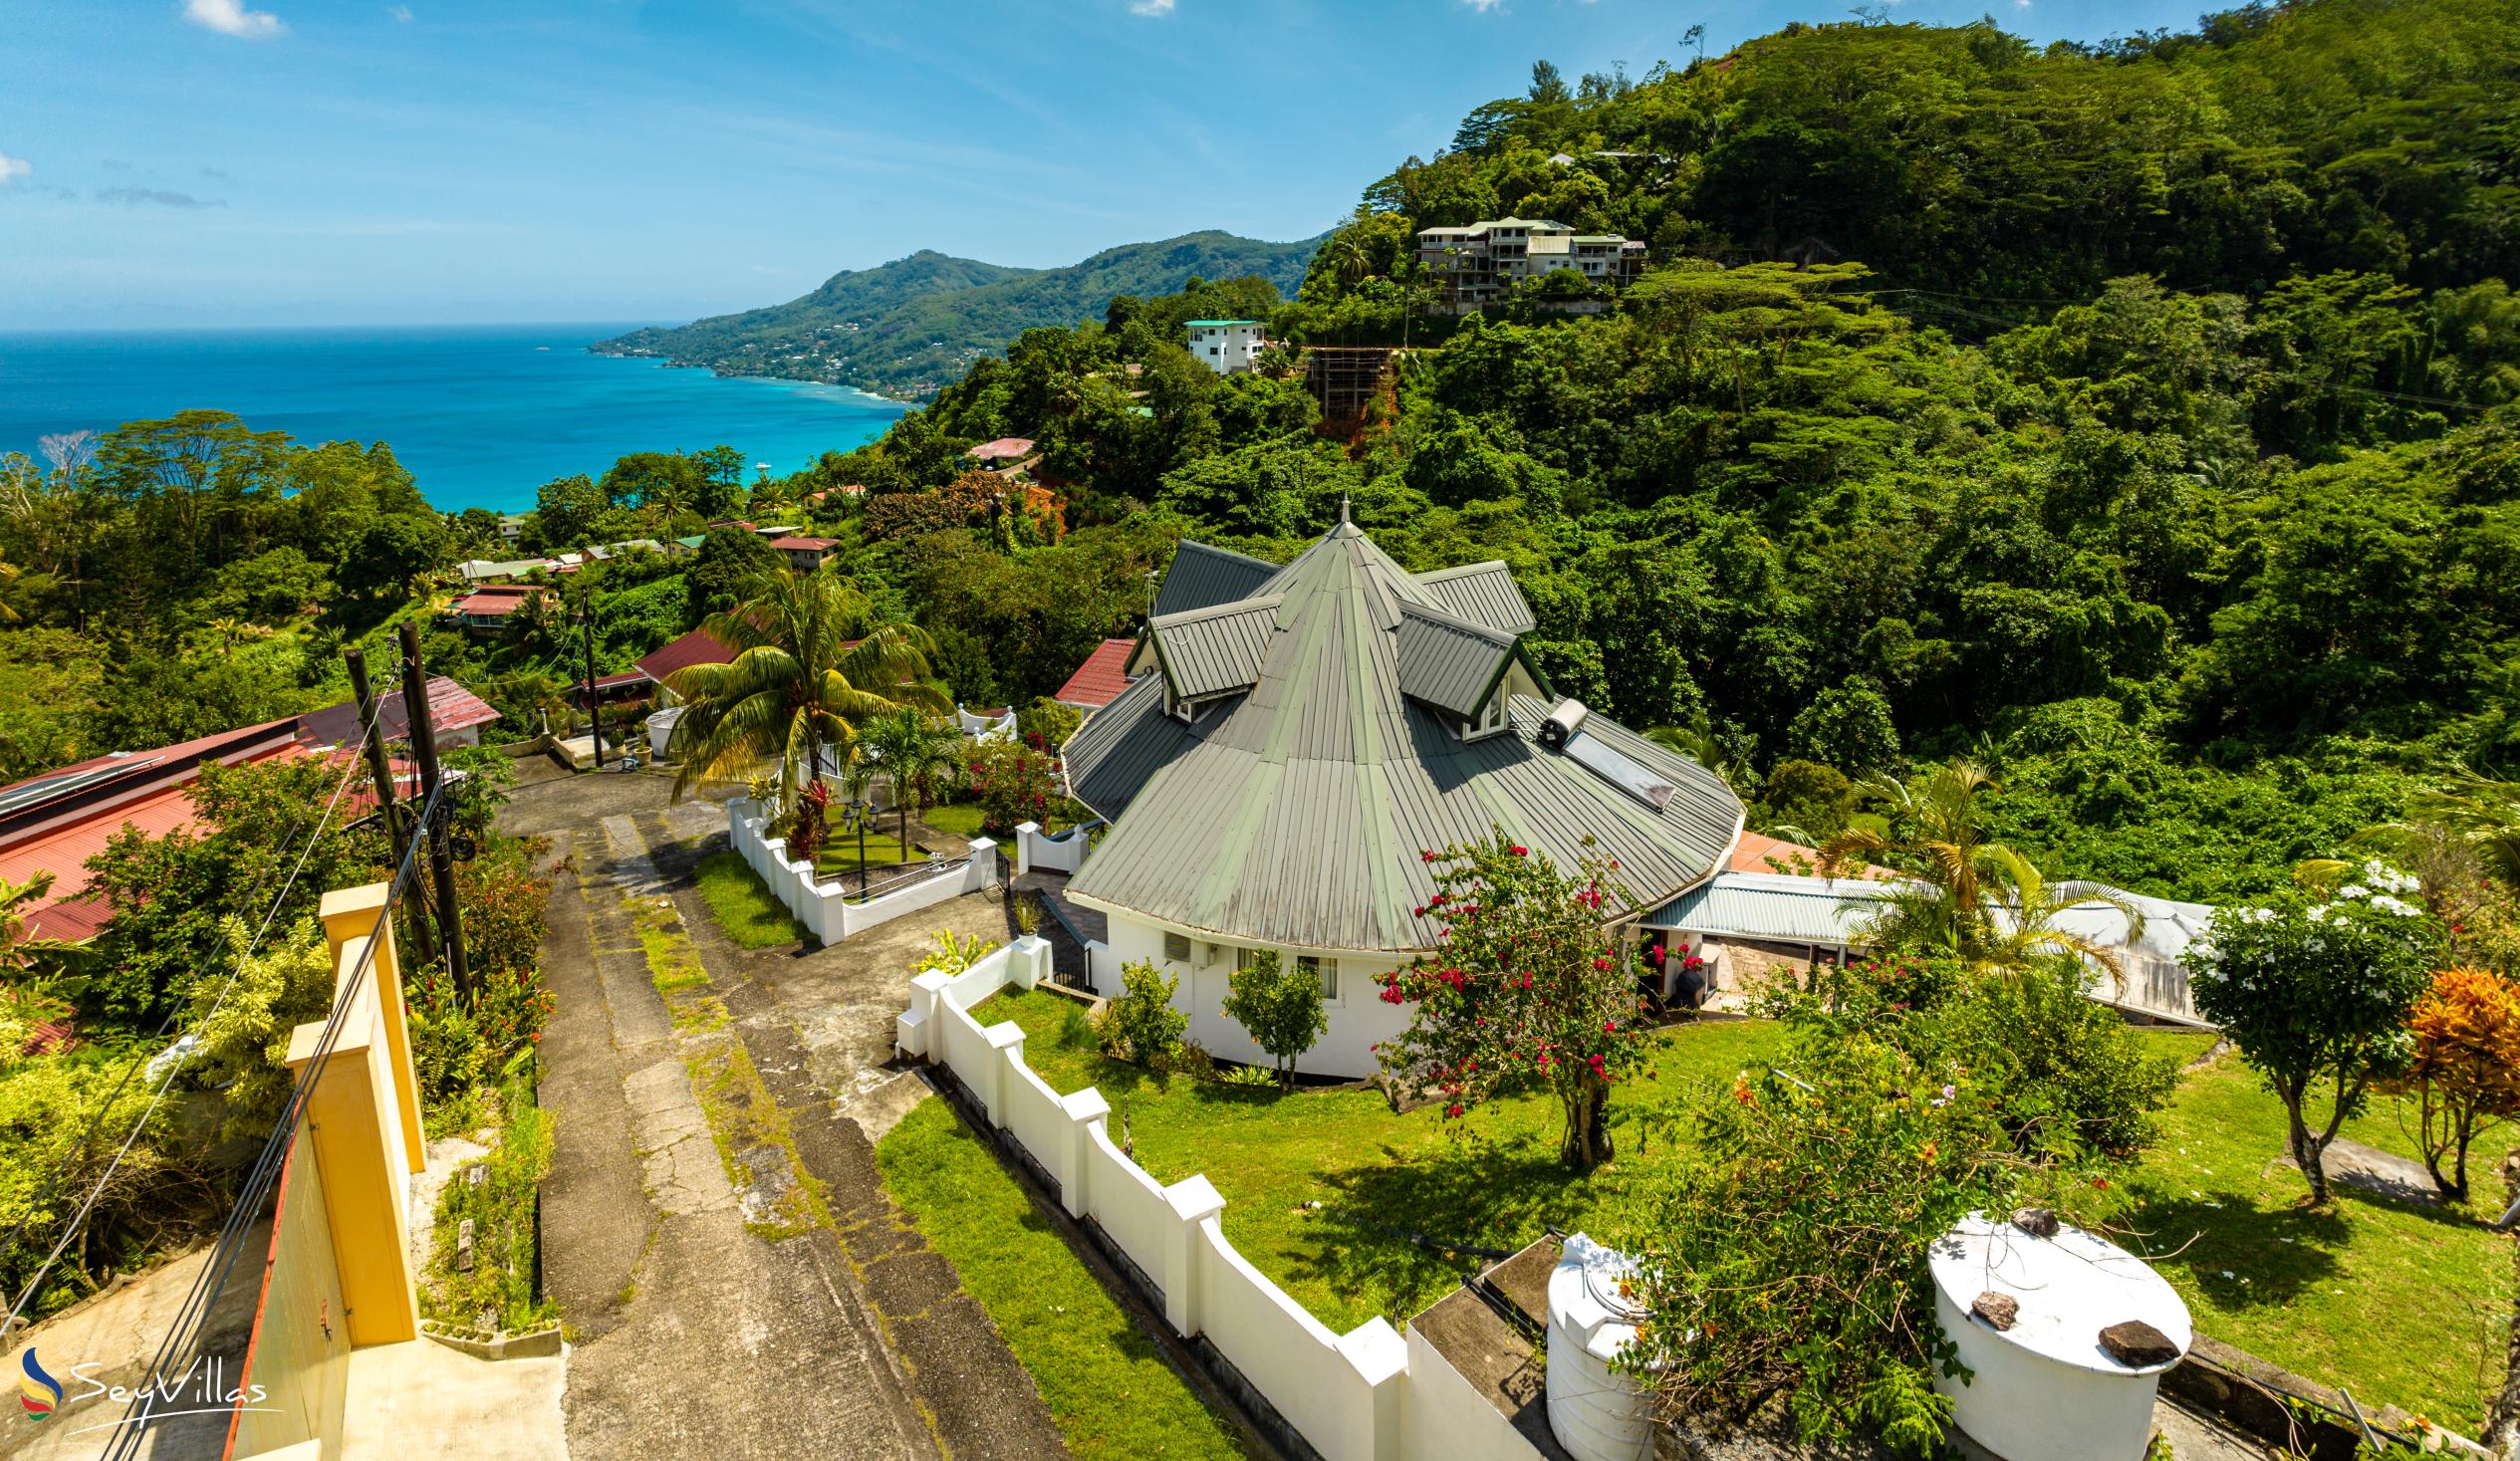 Photo 2: Casuarina Hill Villa - Outdoor area - Mahé (Seychelles)